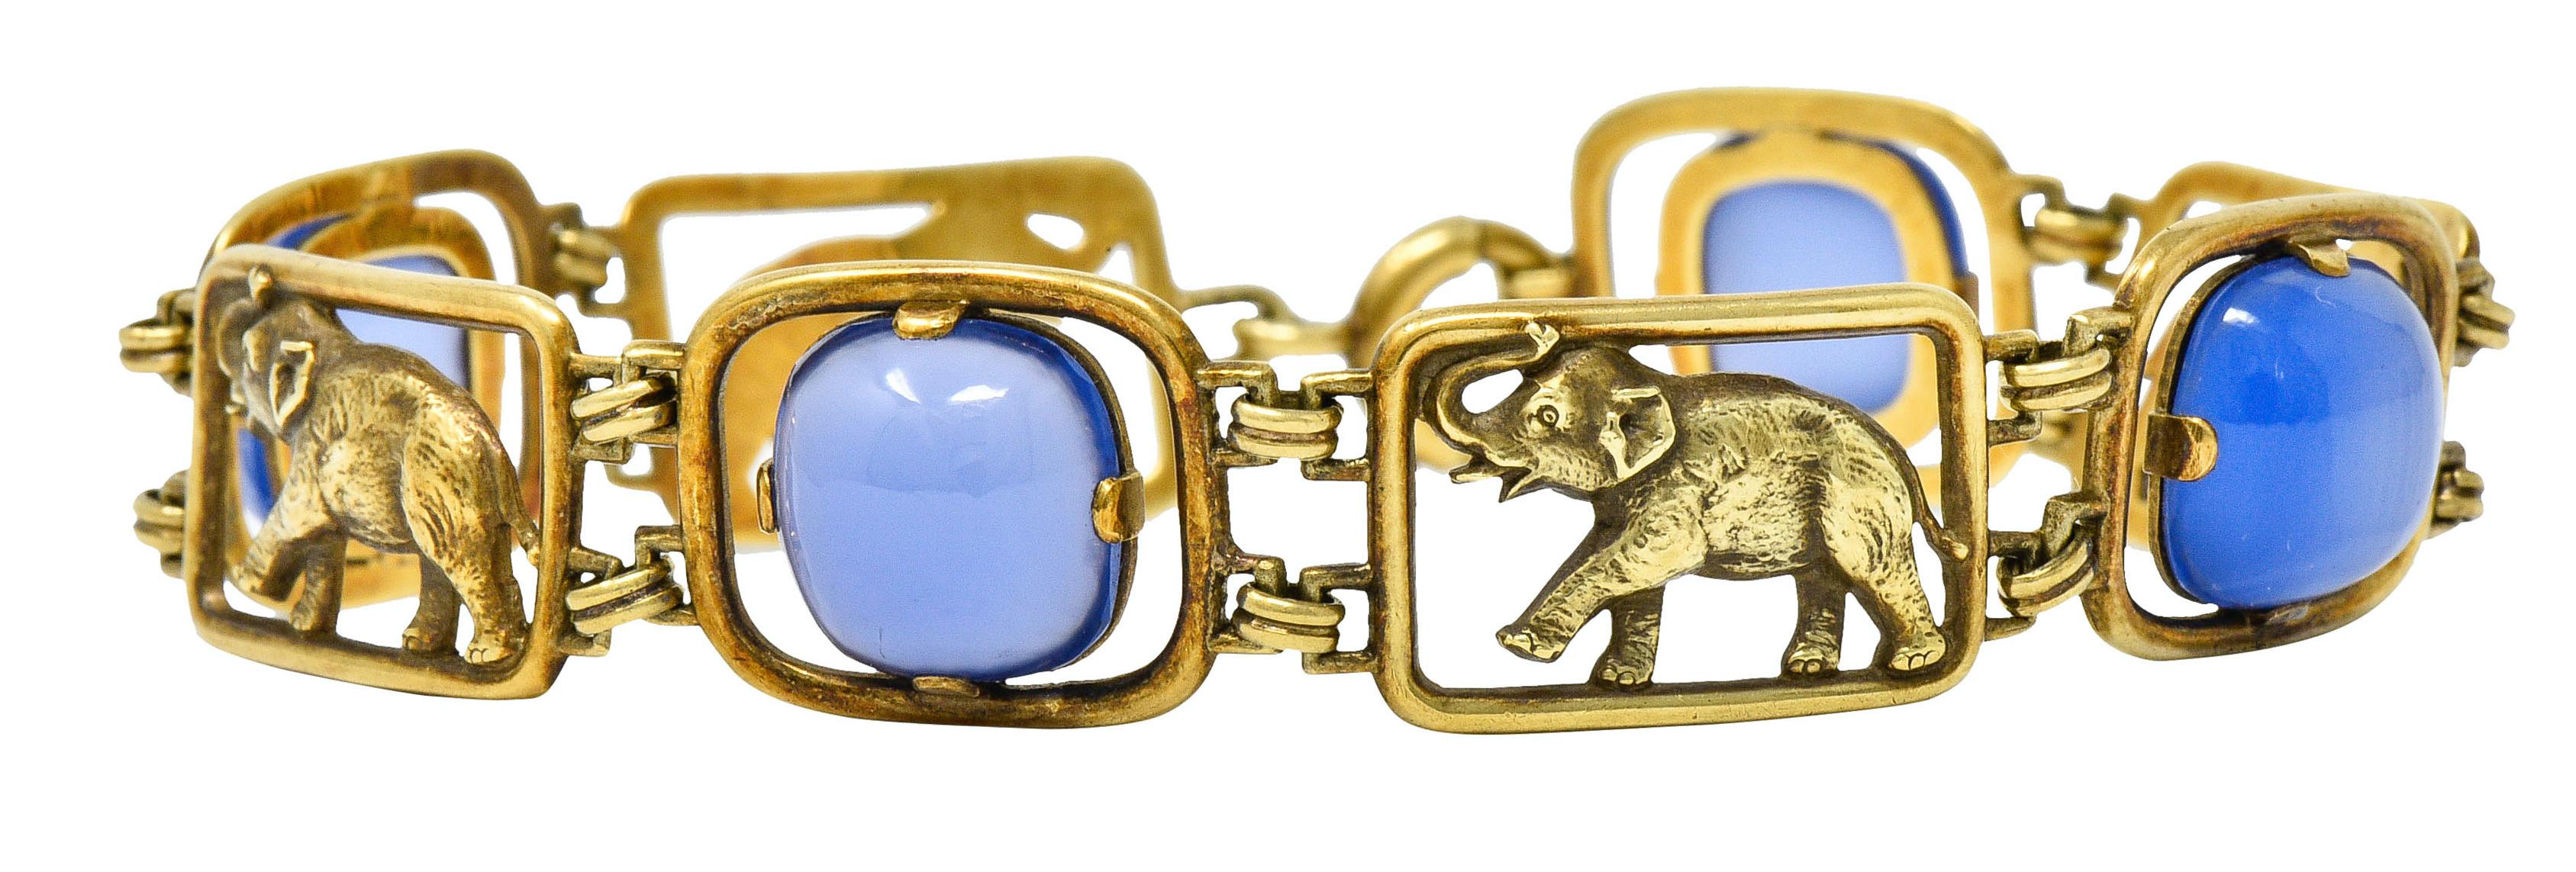 Sugarloaf Cabochon Carter & Gough Art Nouveau Chrysoprase 14 Karat Gold Elephant Link Bracelet